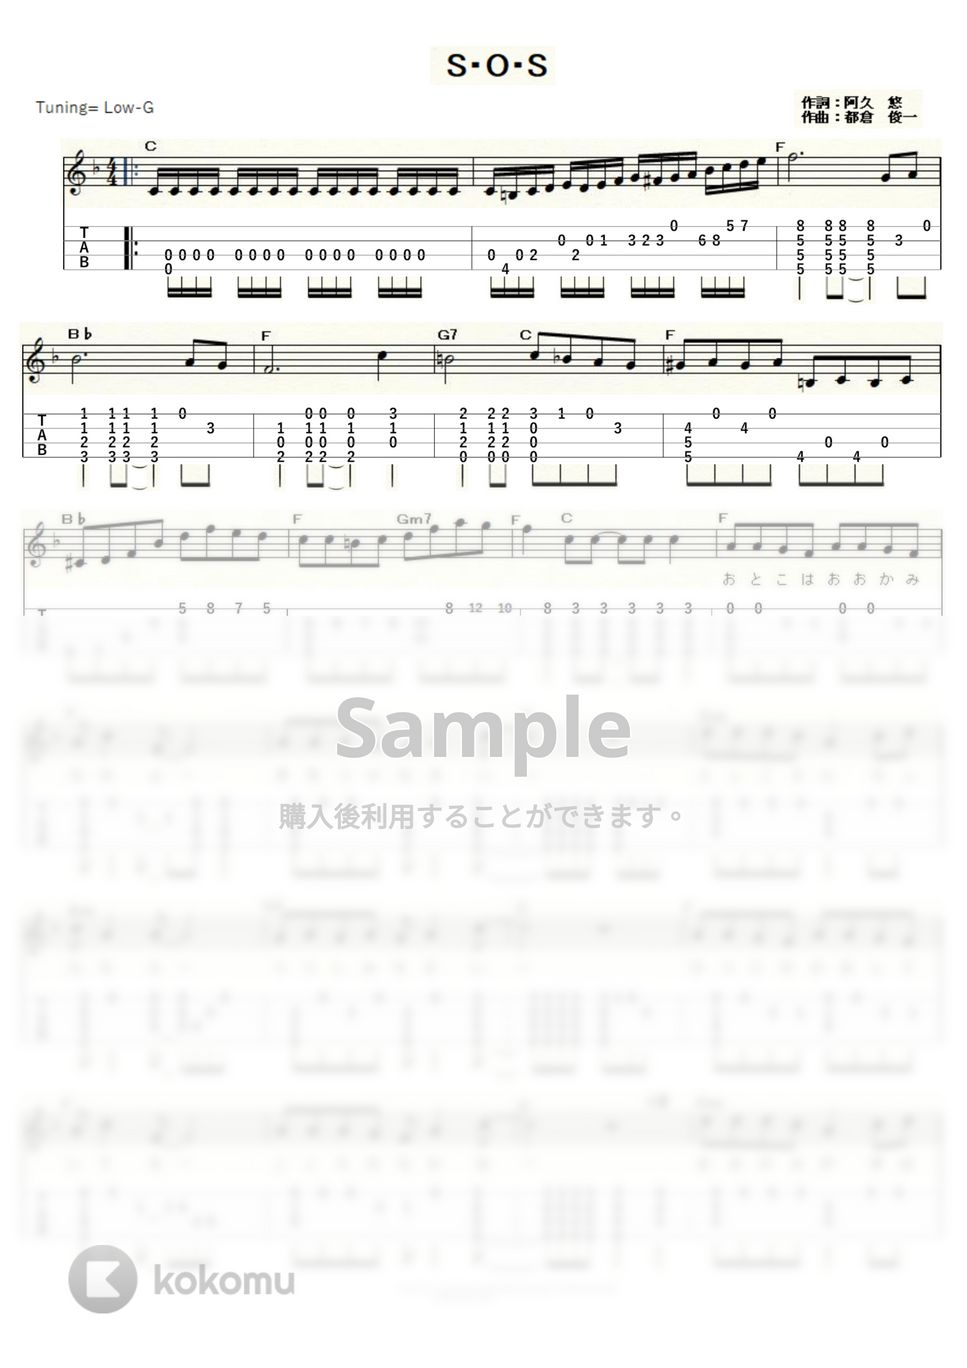 ピンク・レディー - Ｓ・Ｏ・Ｓ (ｳｸﾚﾚｿﾛ/Low-G/中級) by ukulelepapa